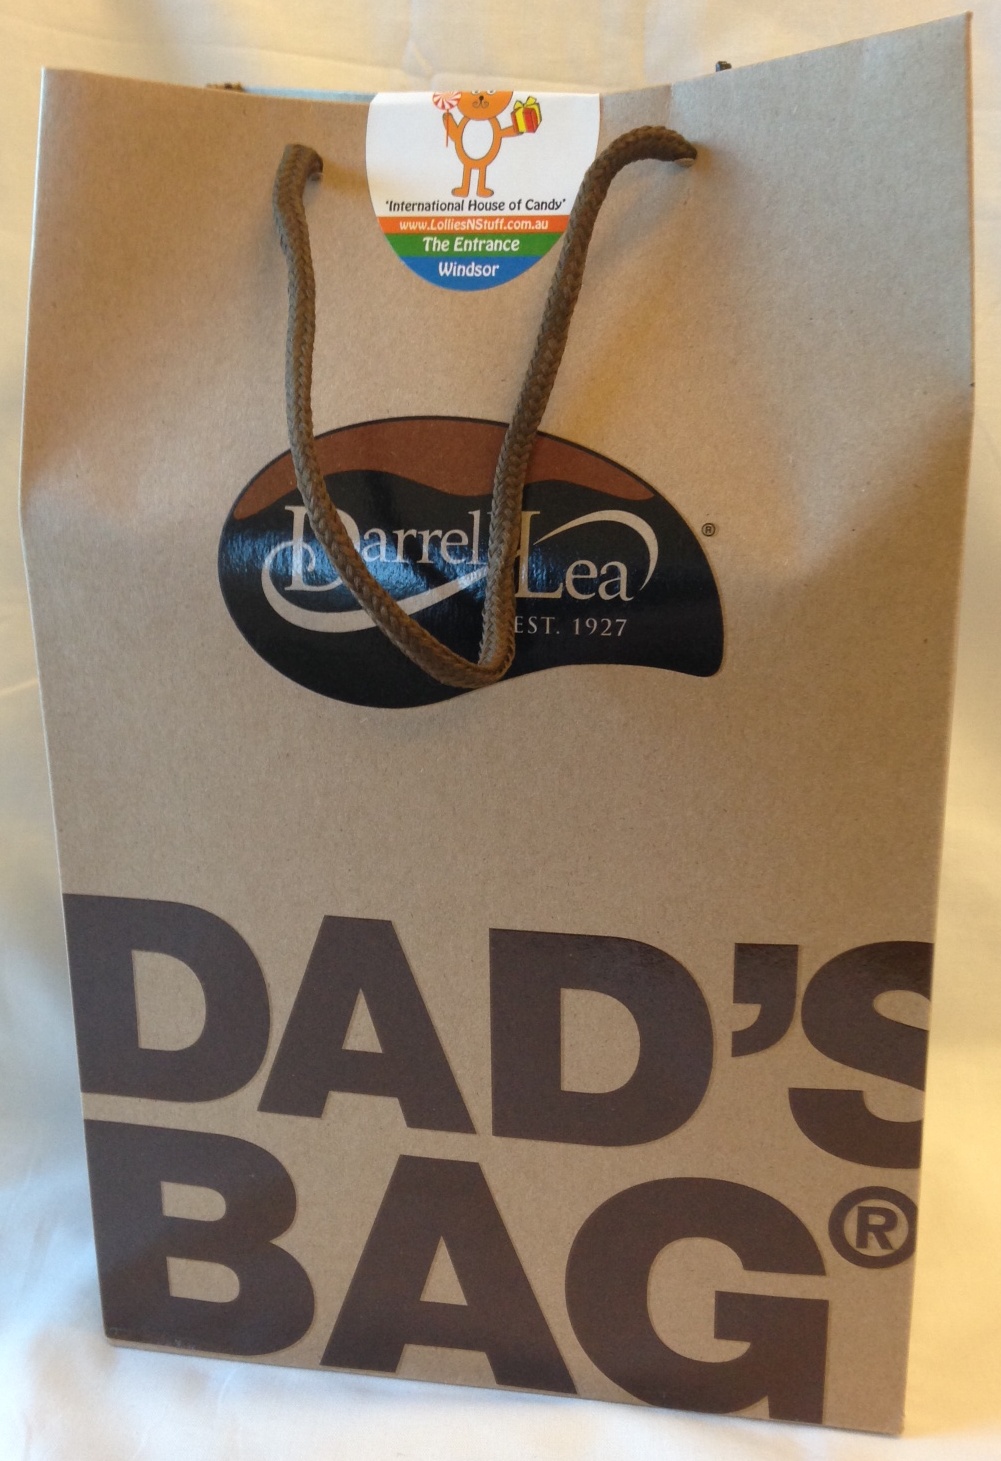 Darrell Lea Dad's Bag